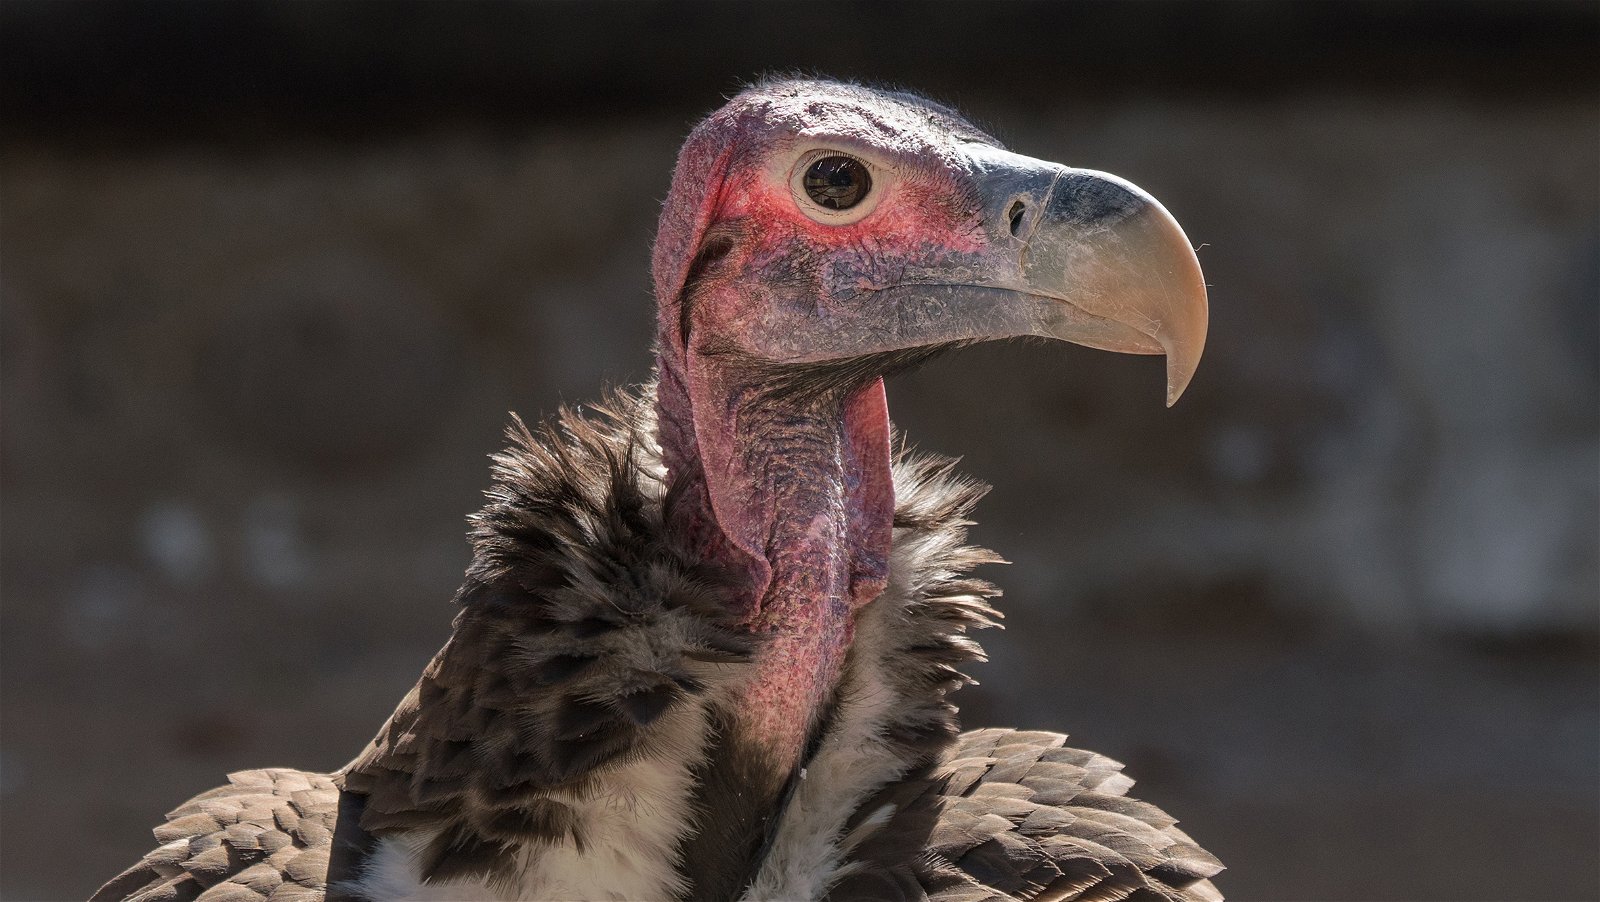 Endangered Vultures call Cango Wildlife Ranch Home - Cango